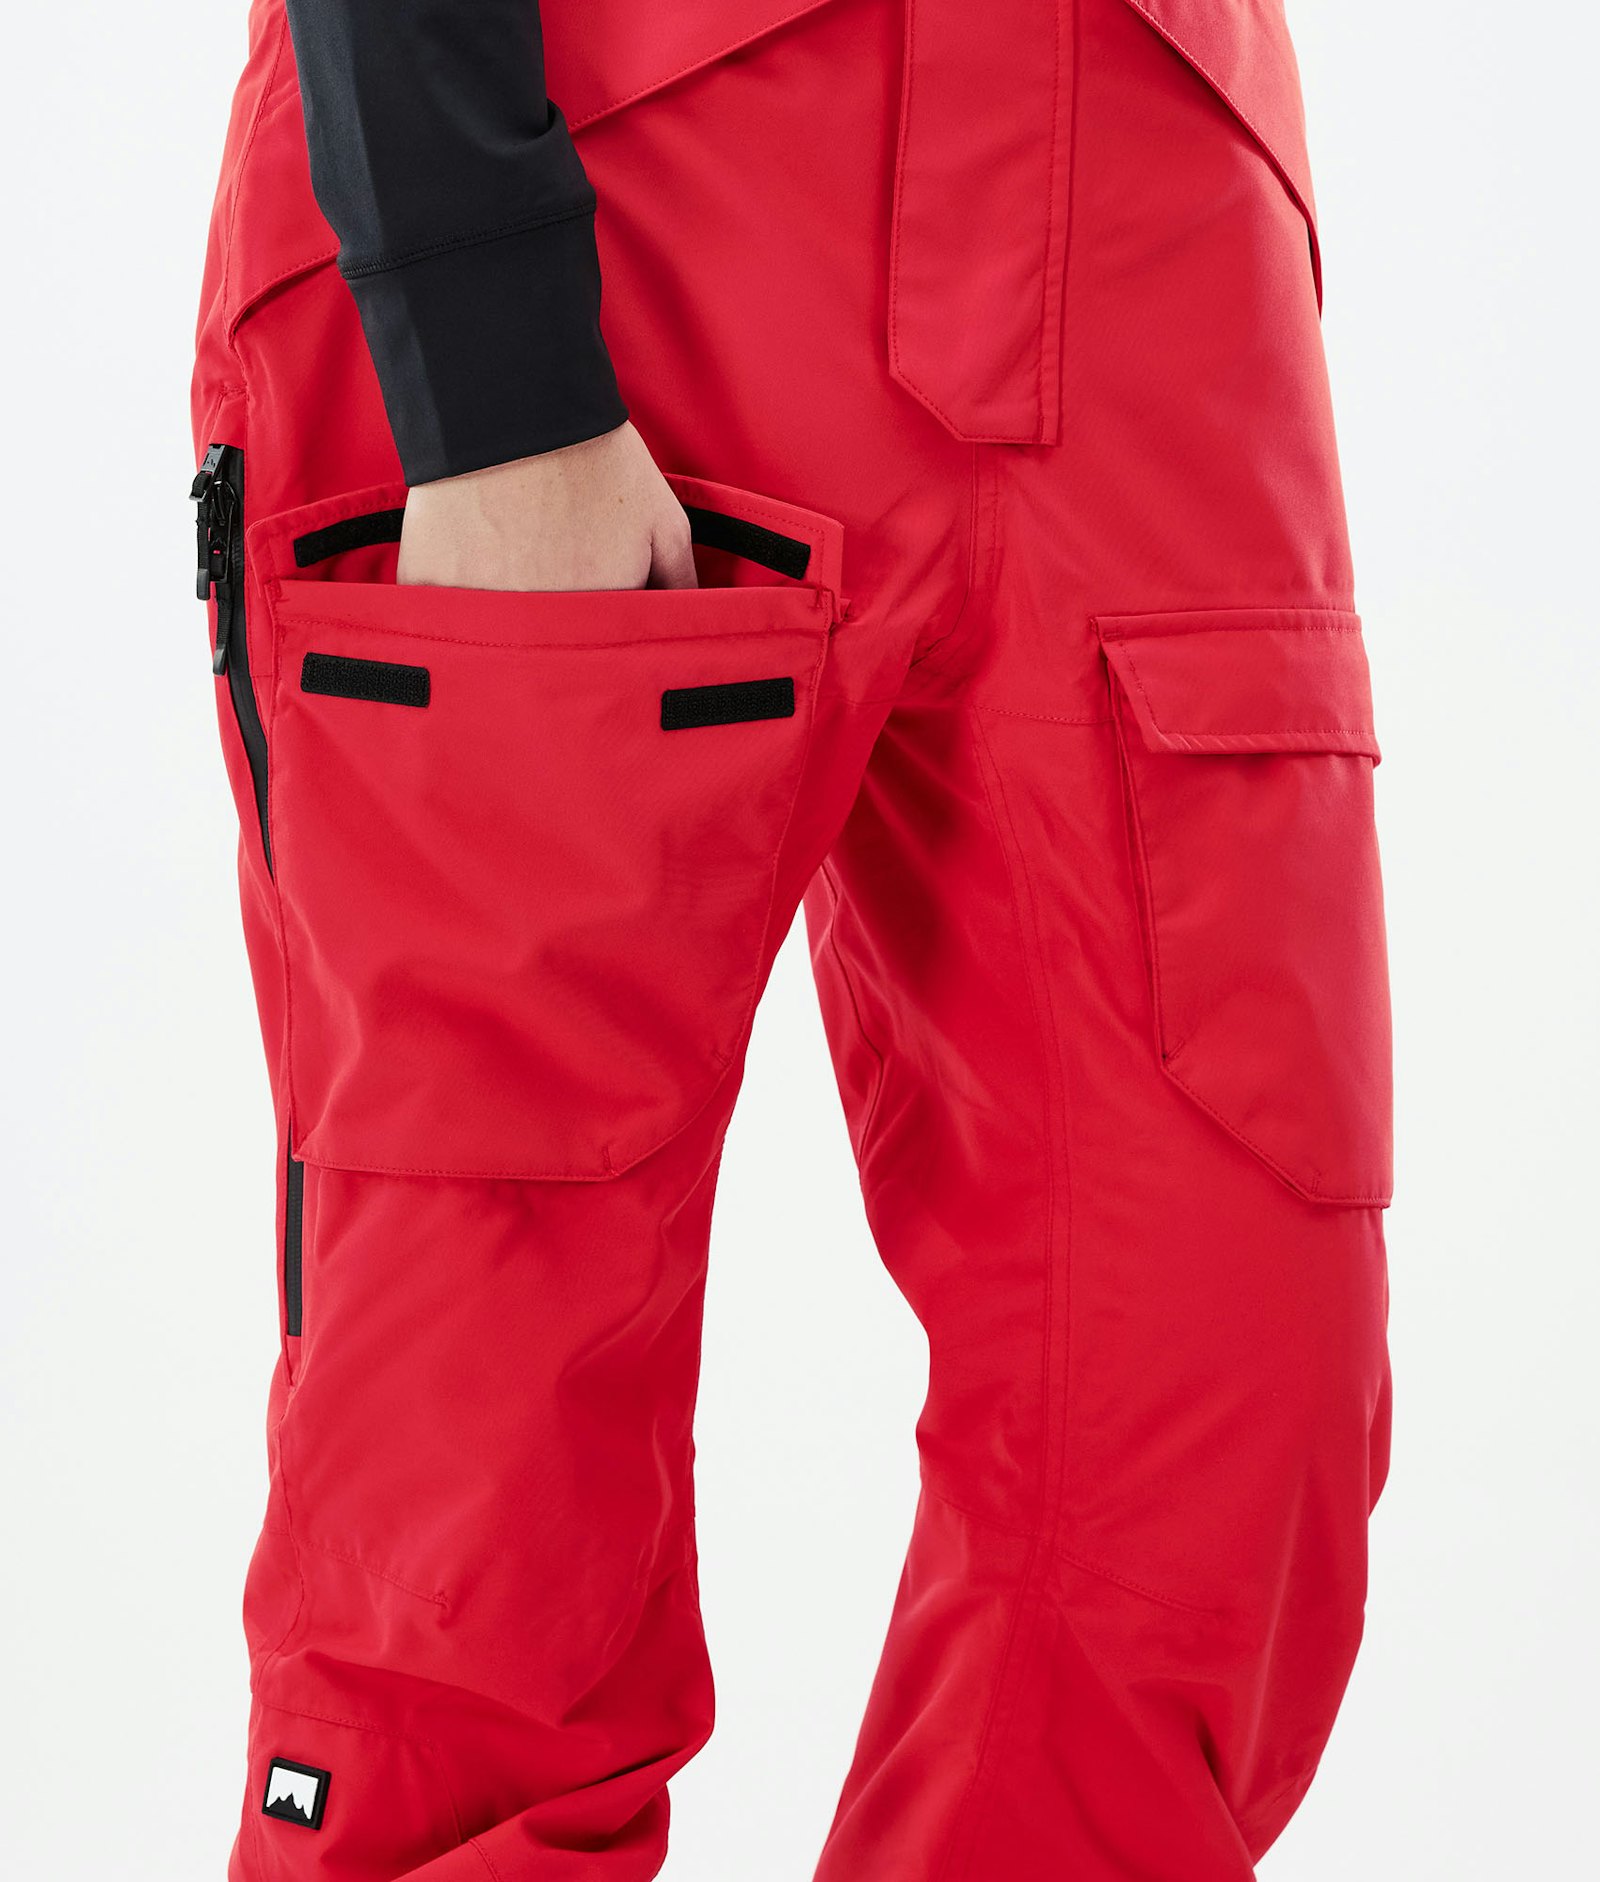 Fawk W 2021 Pantalon de Snowboard Femme Red Renewed